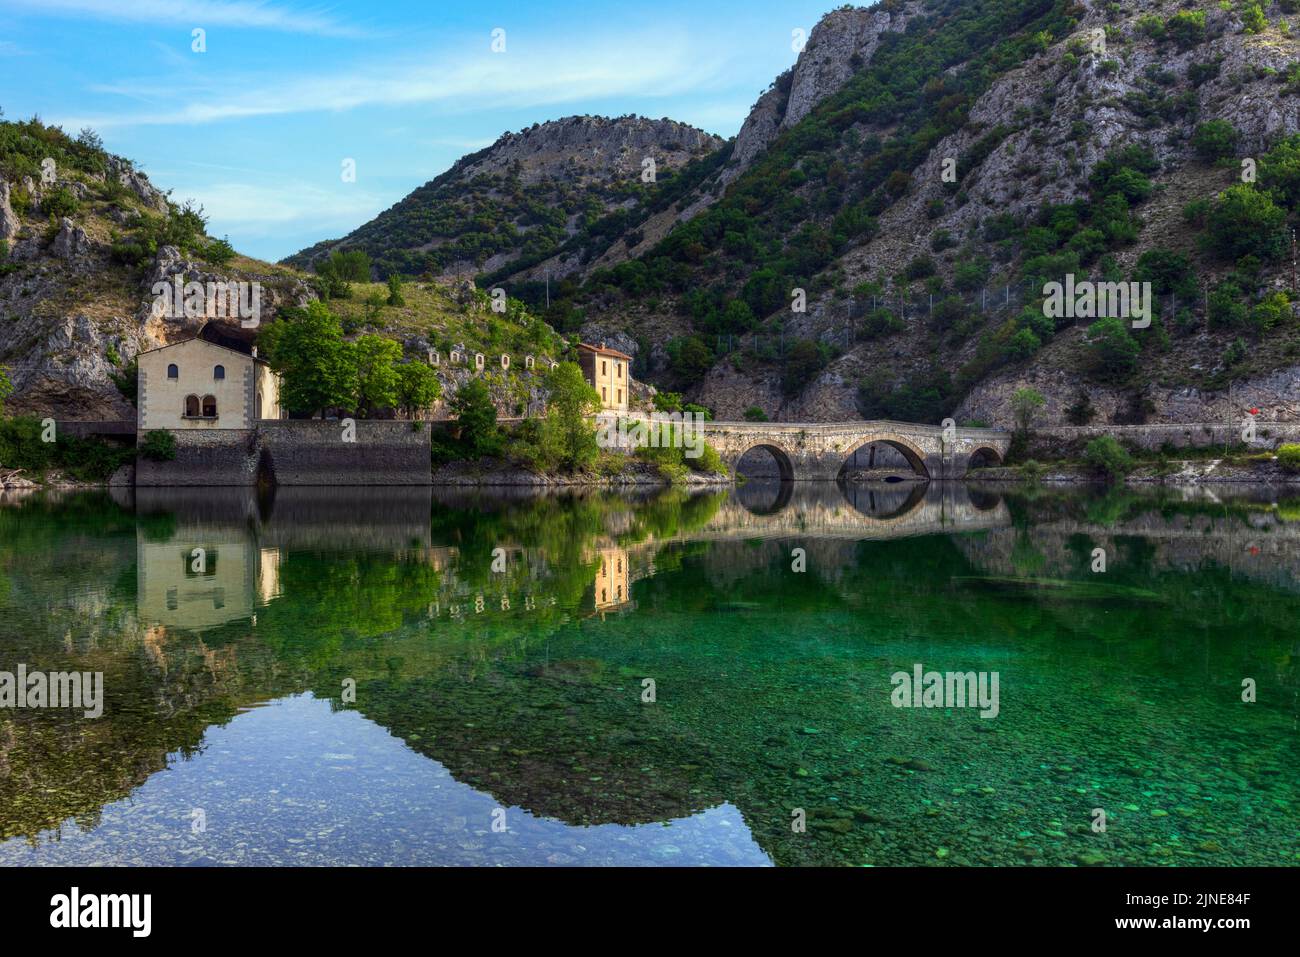 Villalago, Aquila, Abruzzo, Italy Stock Photo